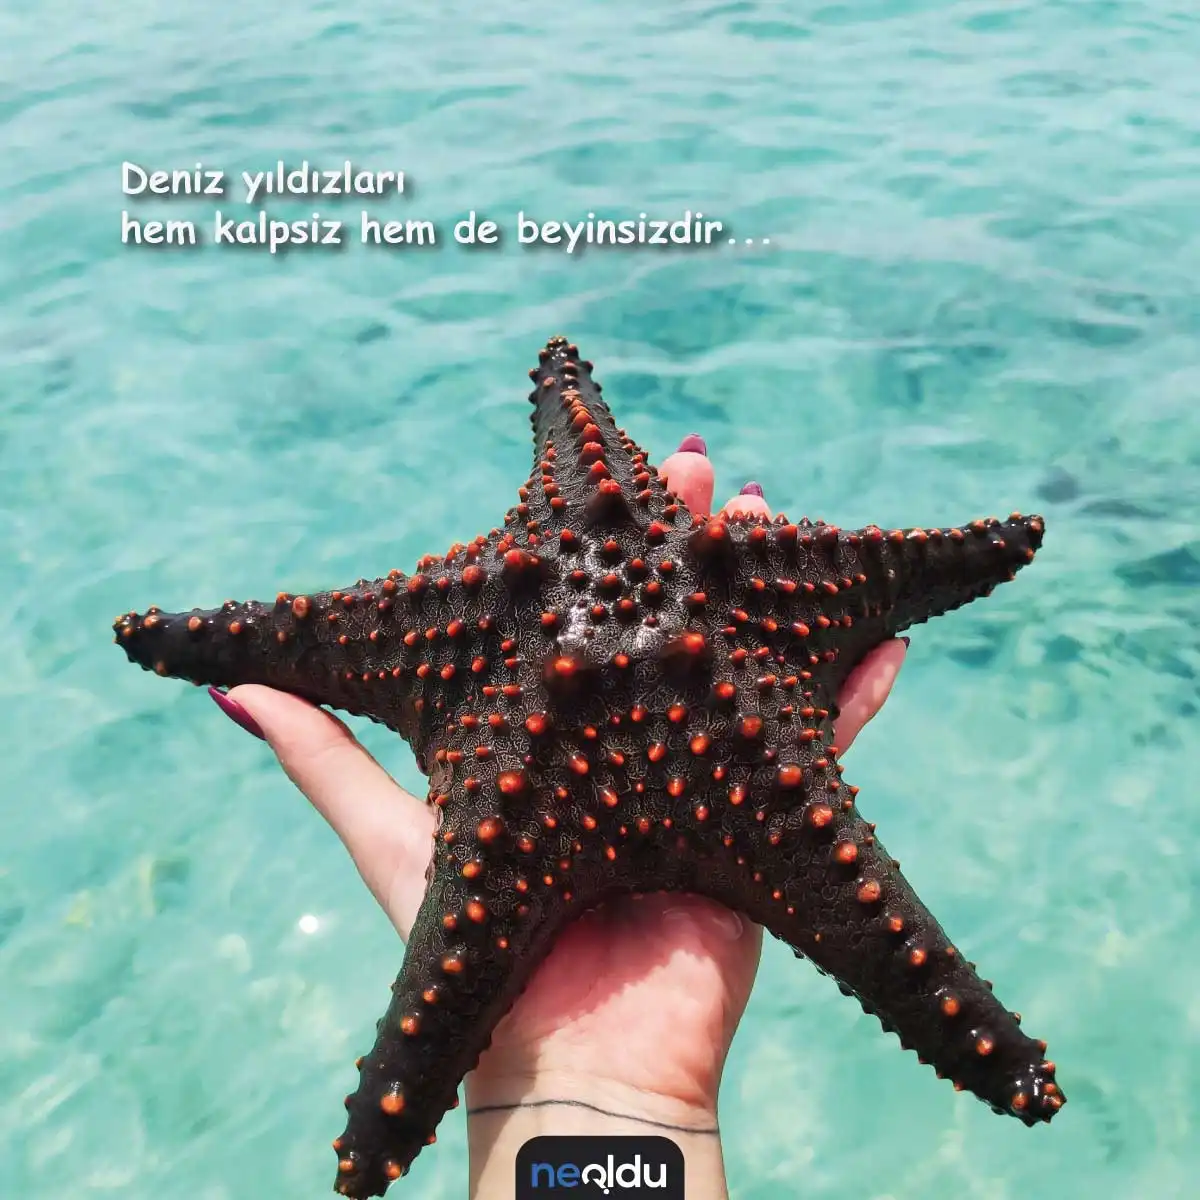 deniz yıldızı sözleri